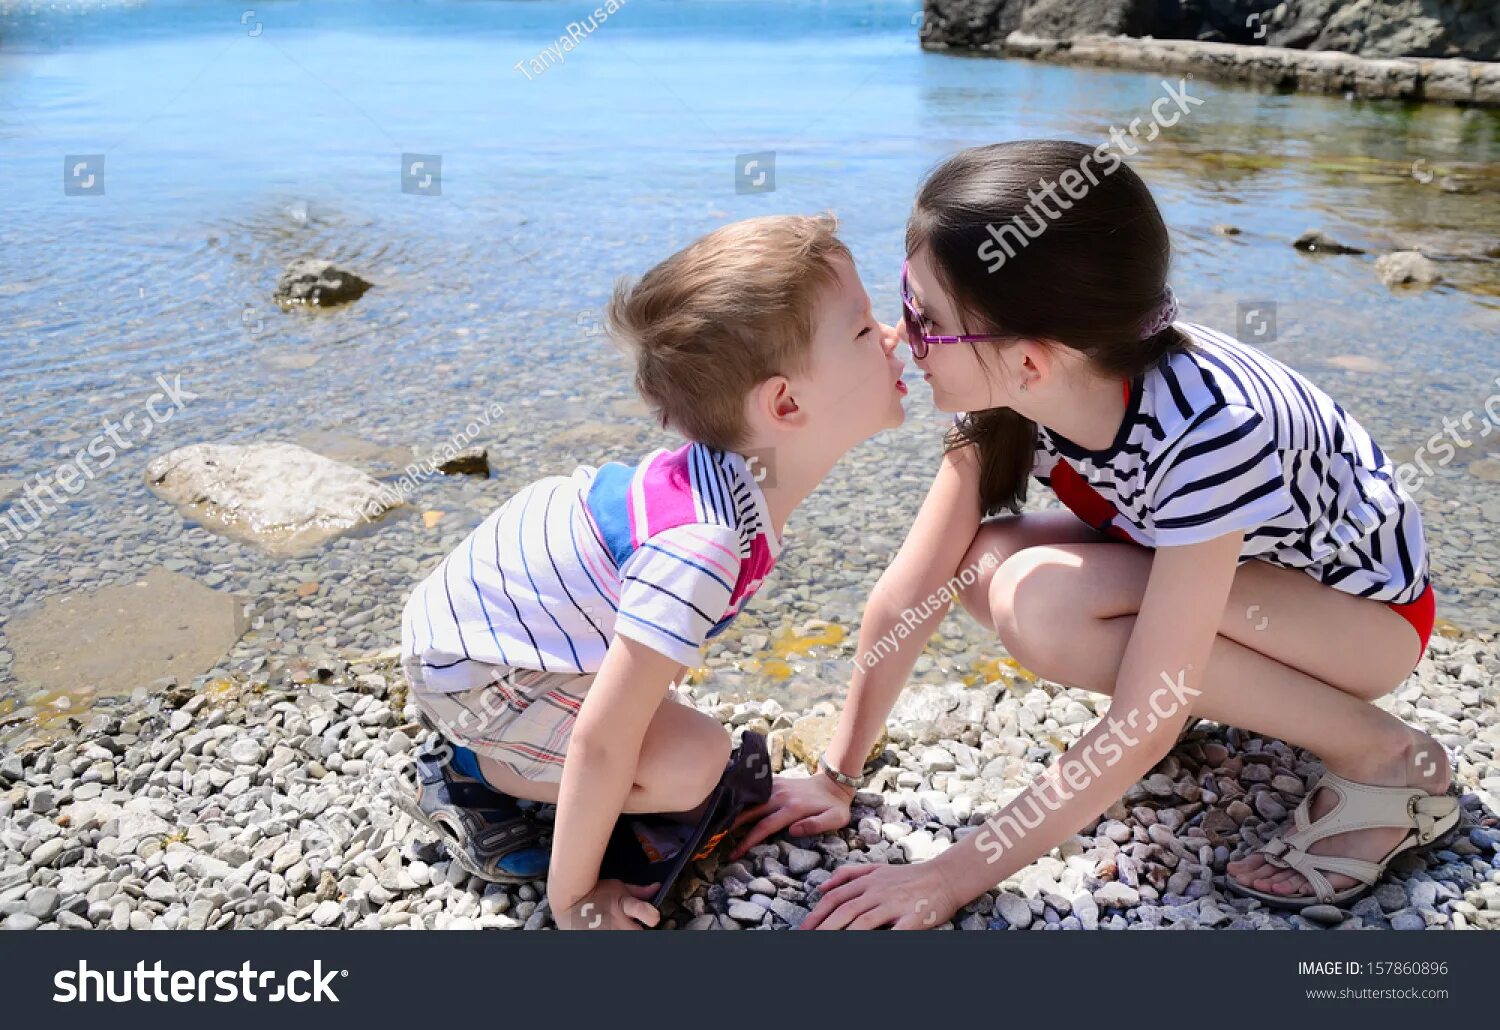 Младший брат лижет. Сестрички на пляжу лет 10. Маленький мальчик и девочка занимаются. Брат и сестра целуются. Поцелуй в 10 лет.